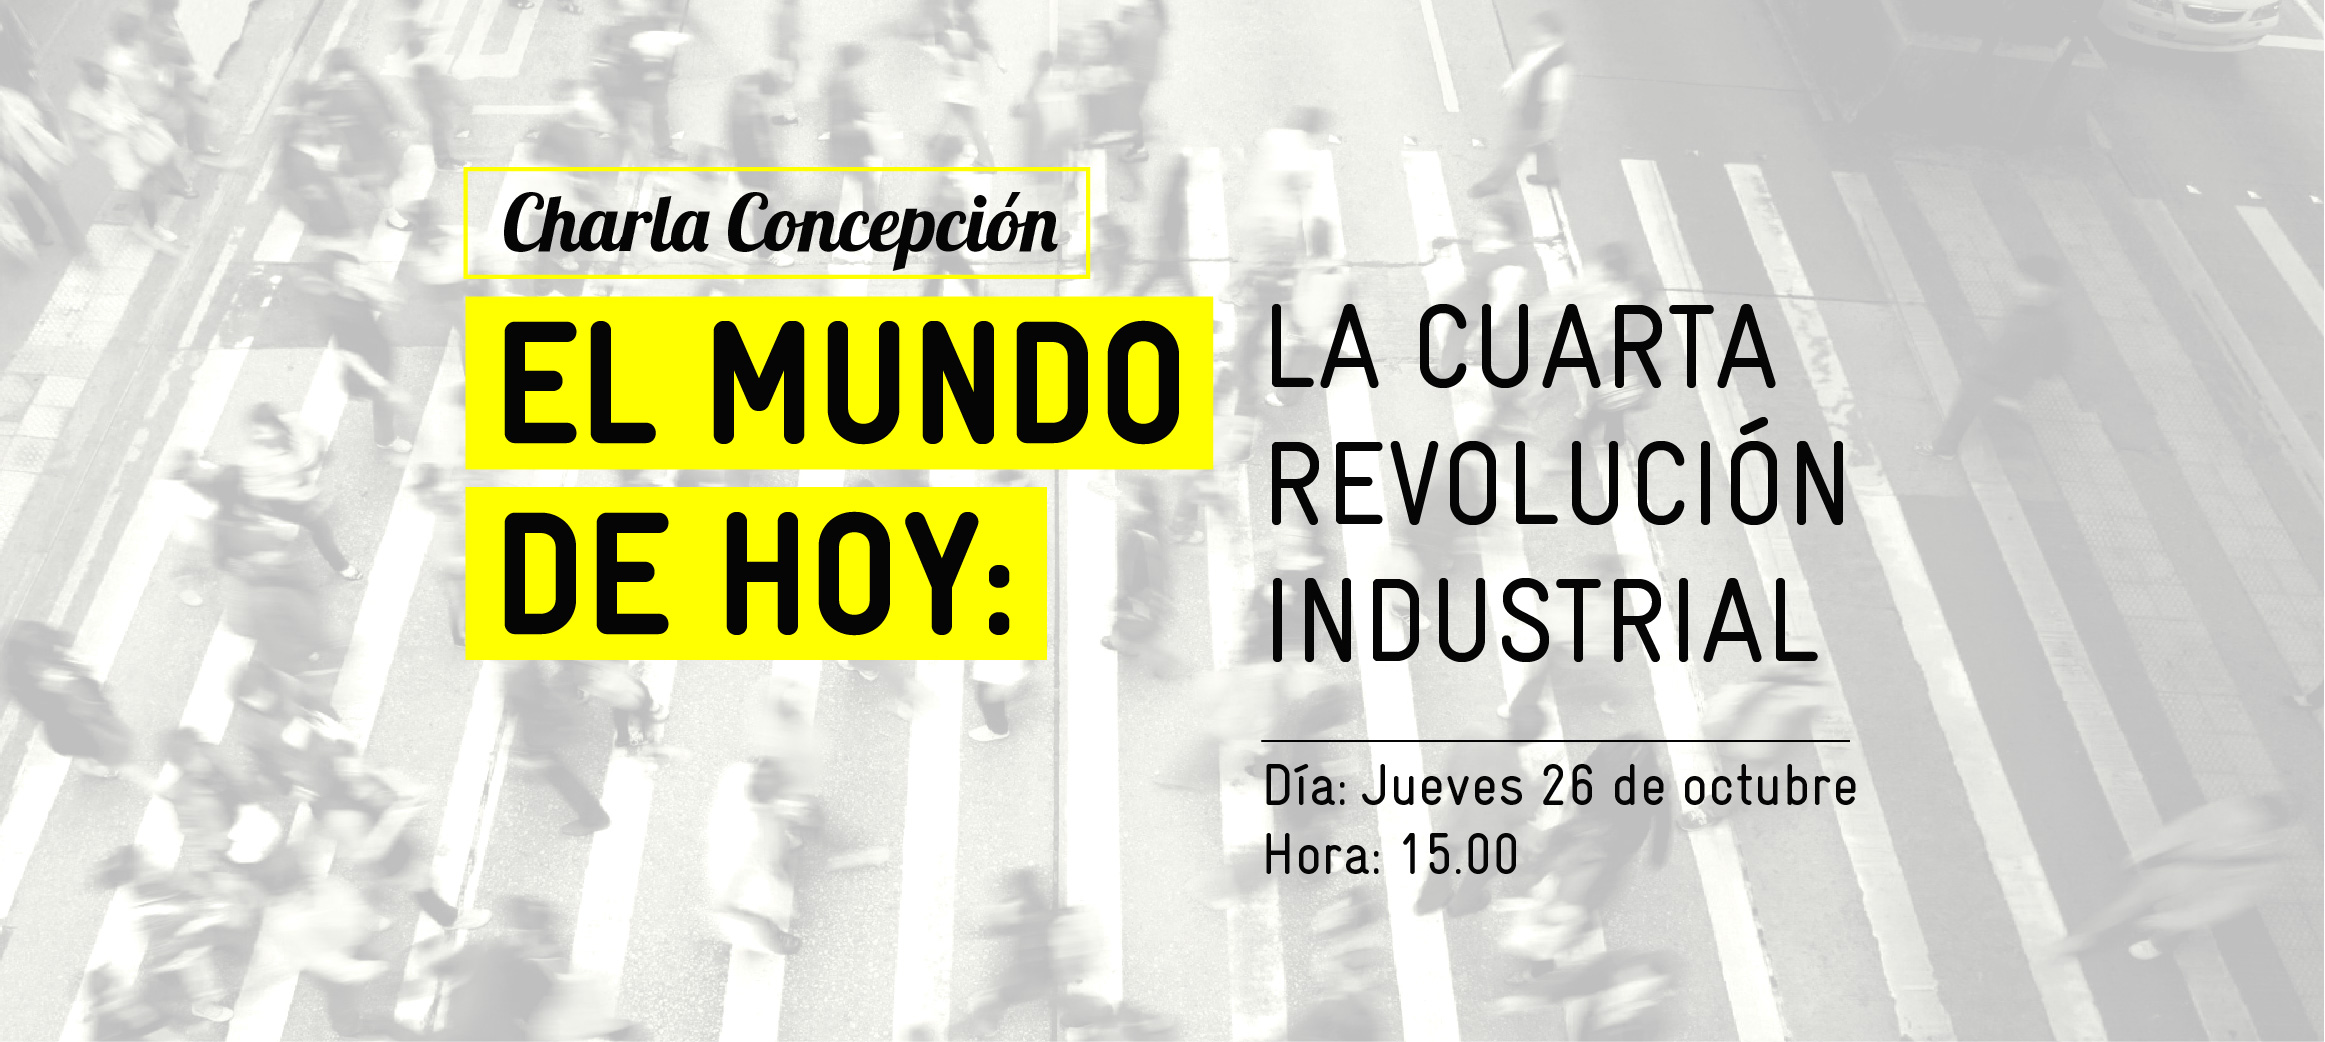 Charla "El mundo de hoy: la 4ta revolución industrial" en Concepción